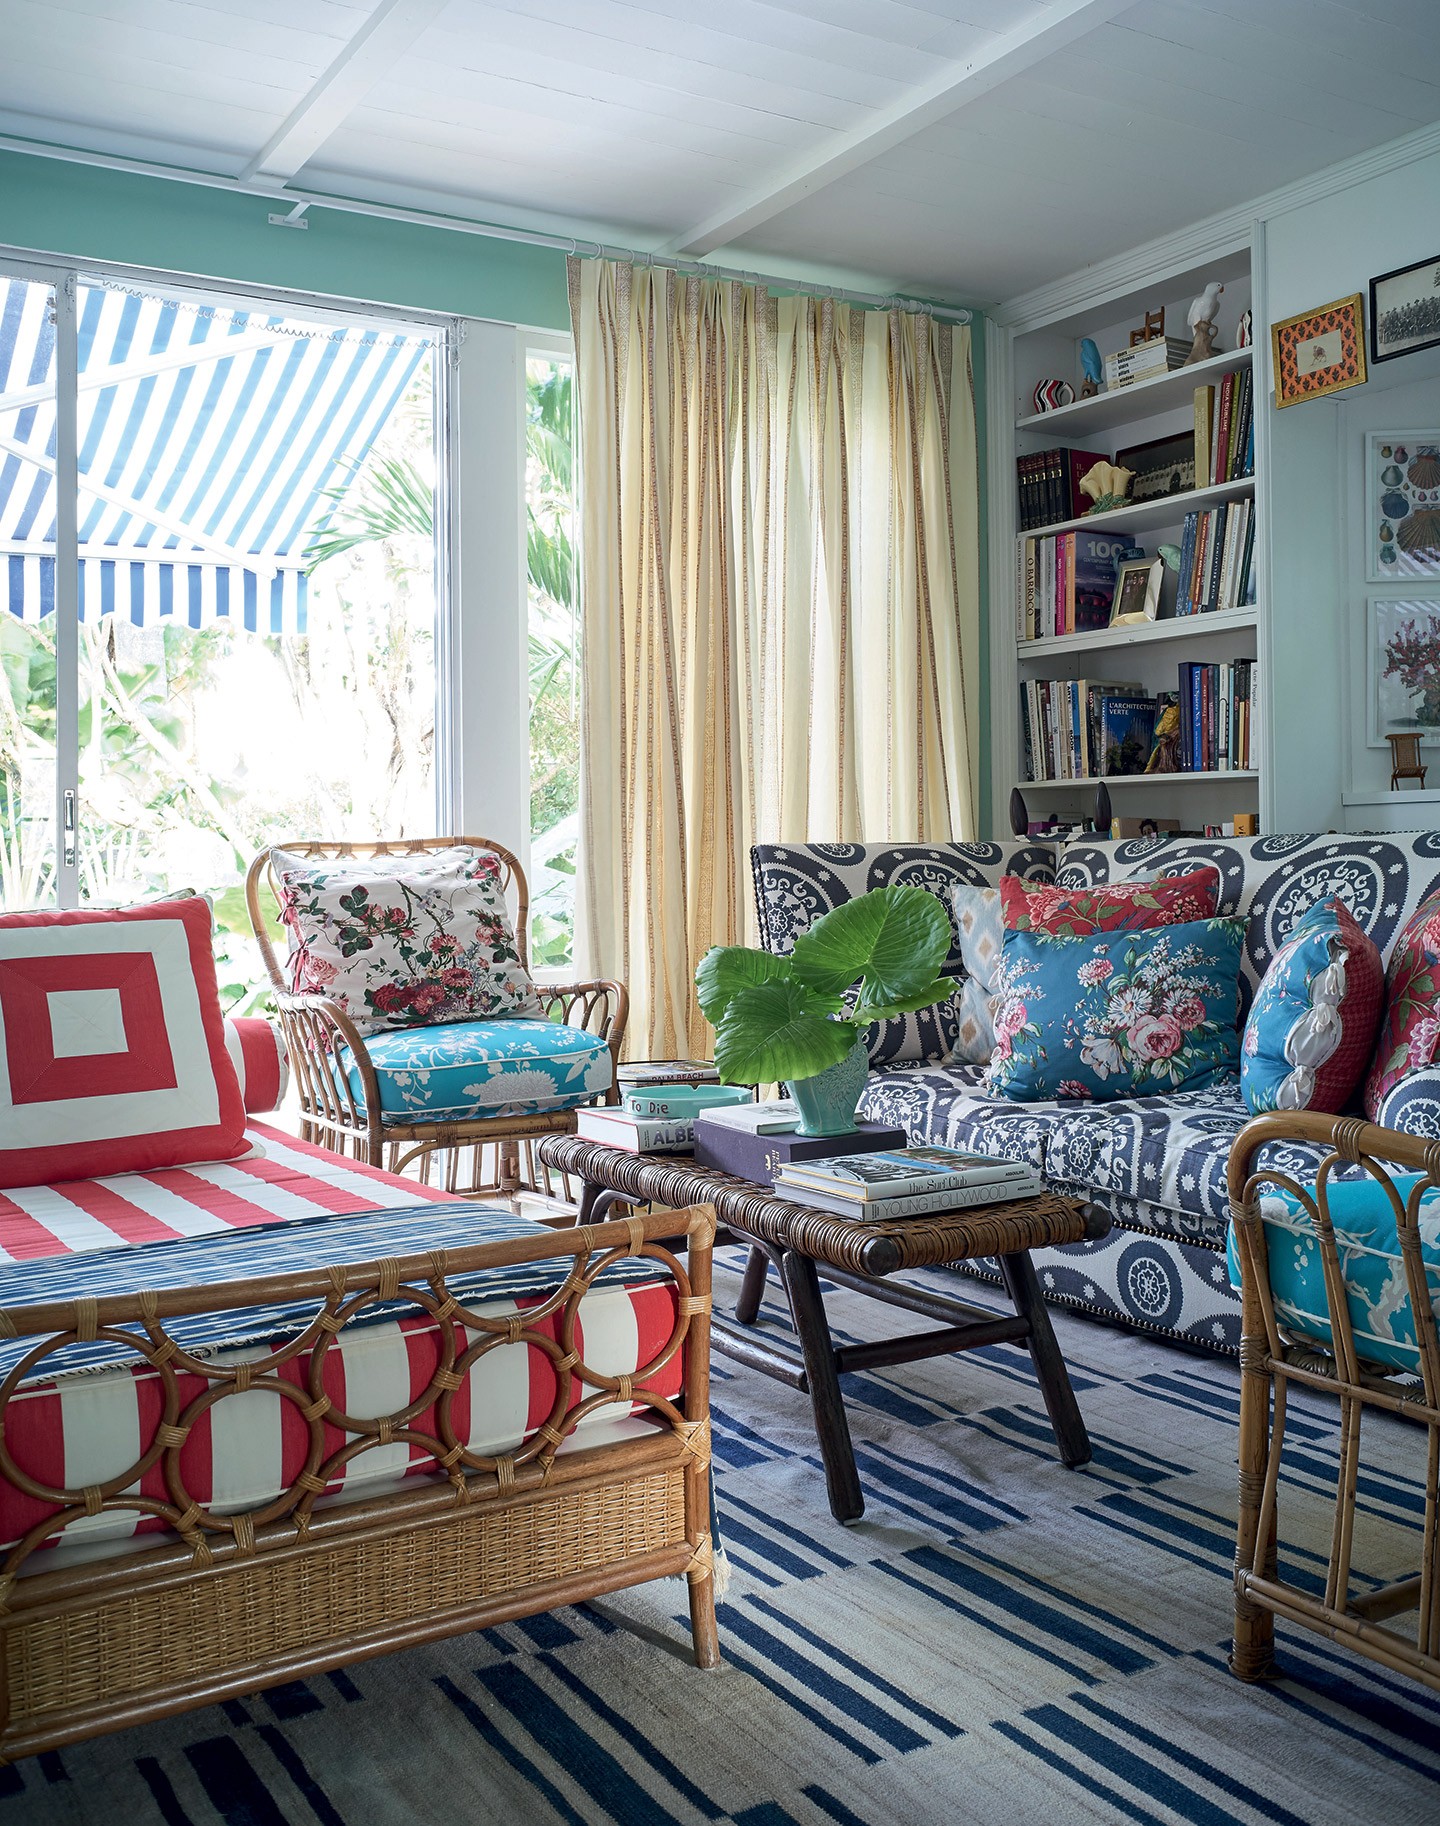 Em Miami, casa com decoração maximalista mistura cores, garimpos e arte (Foto: Björn Wallander/divulgação)